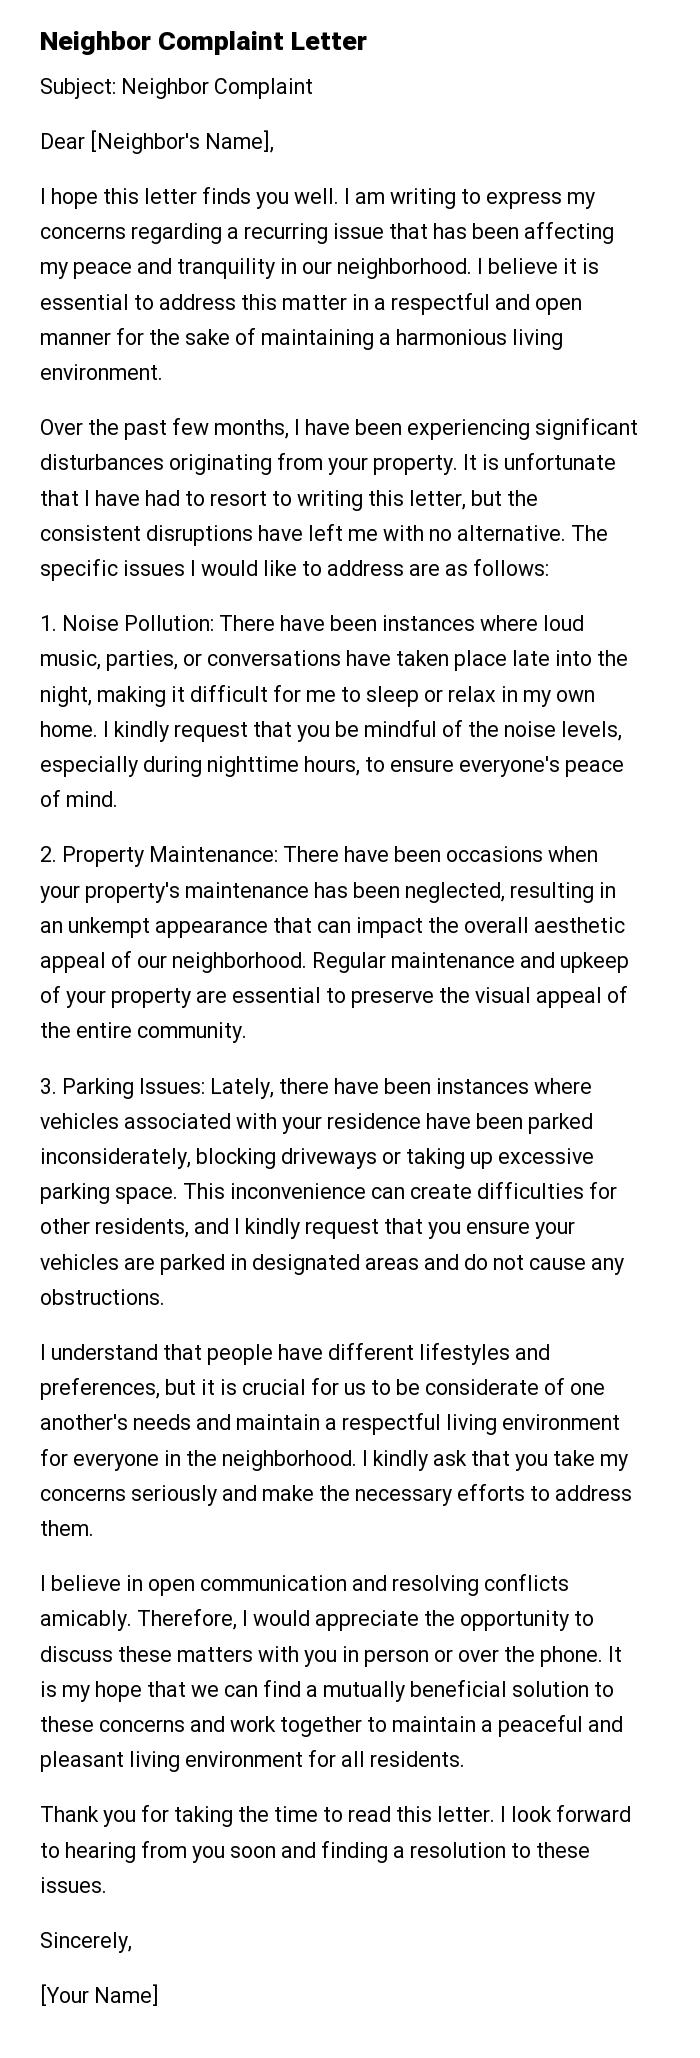 Neighbor Complaint Letter